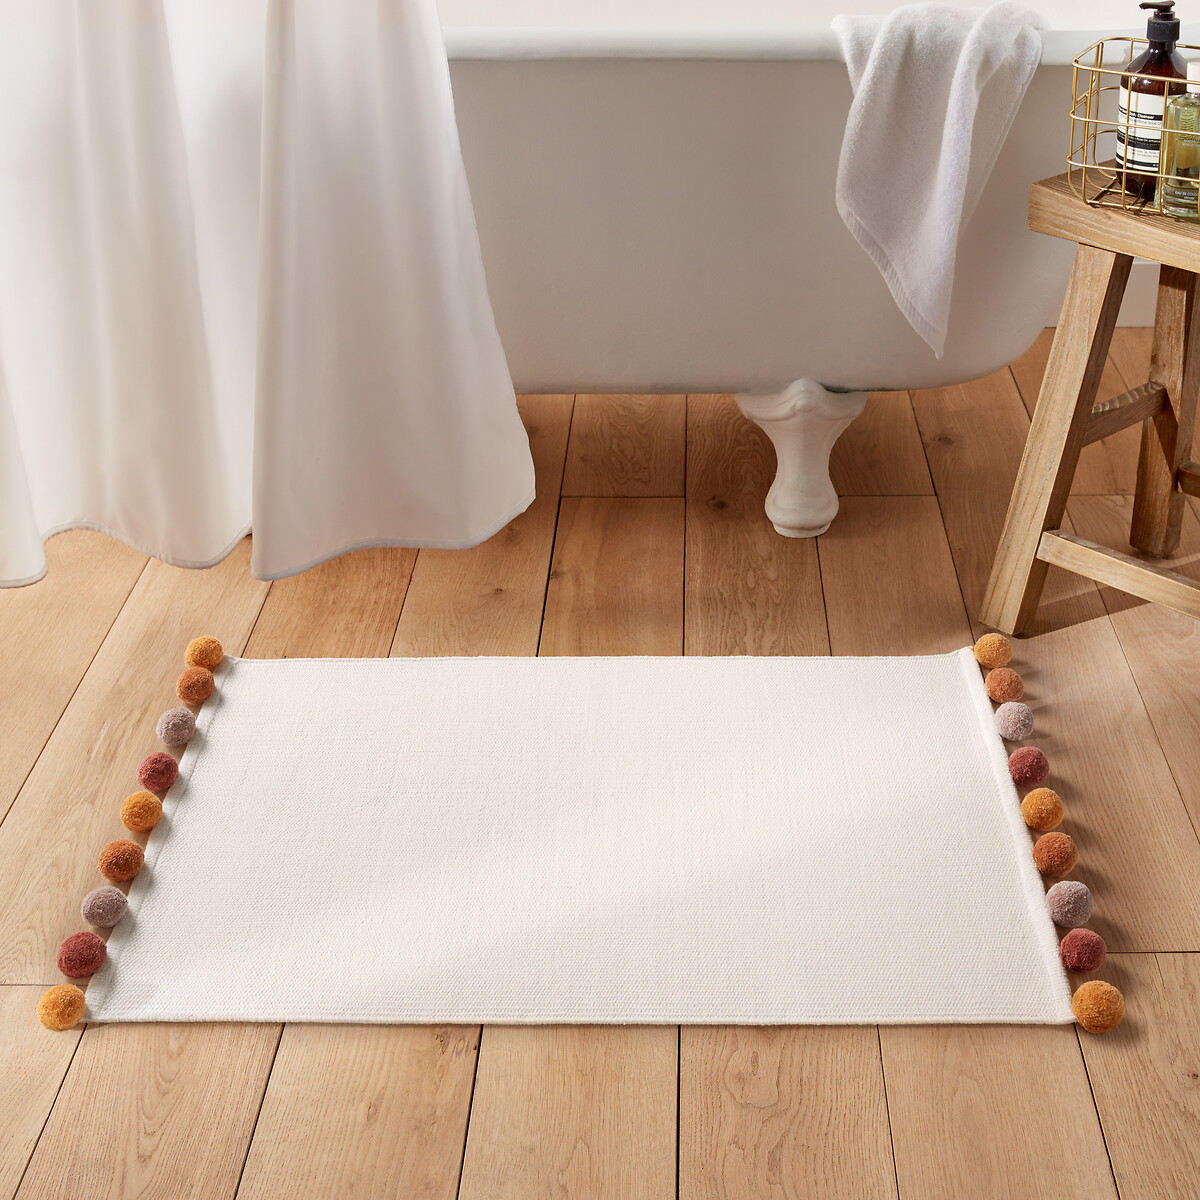 Pompons Woven Cotton Bath Mat